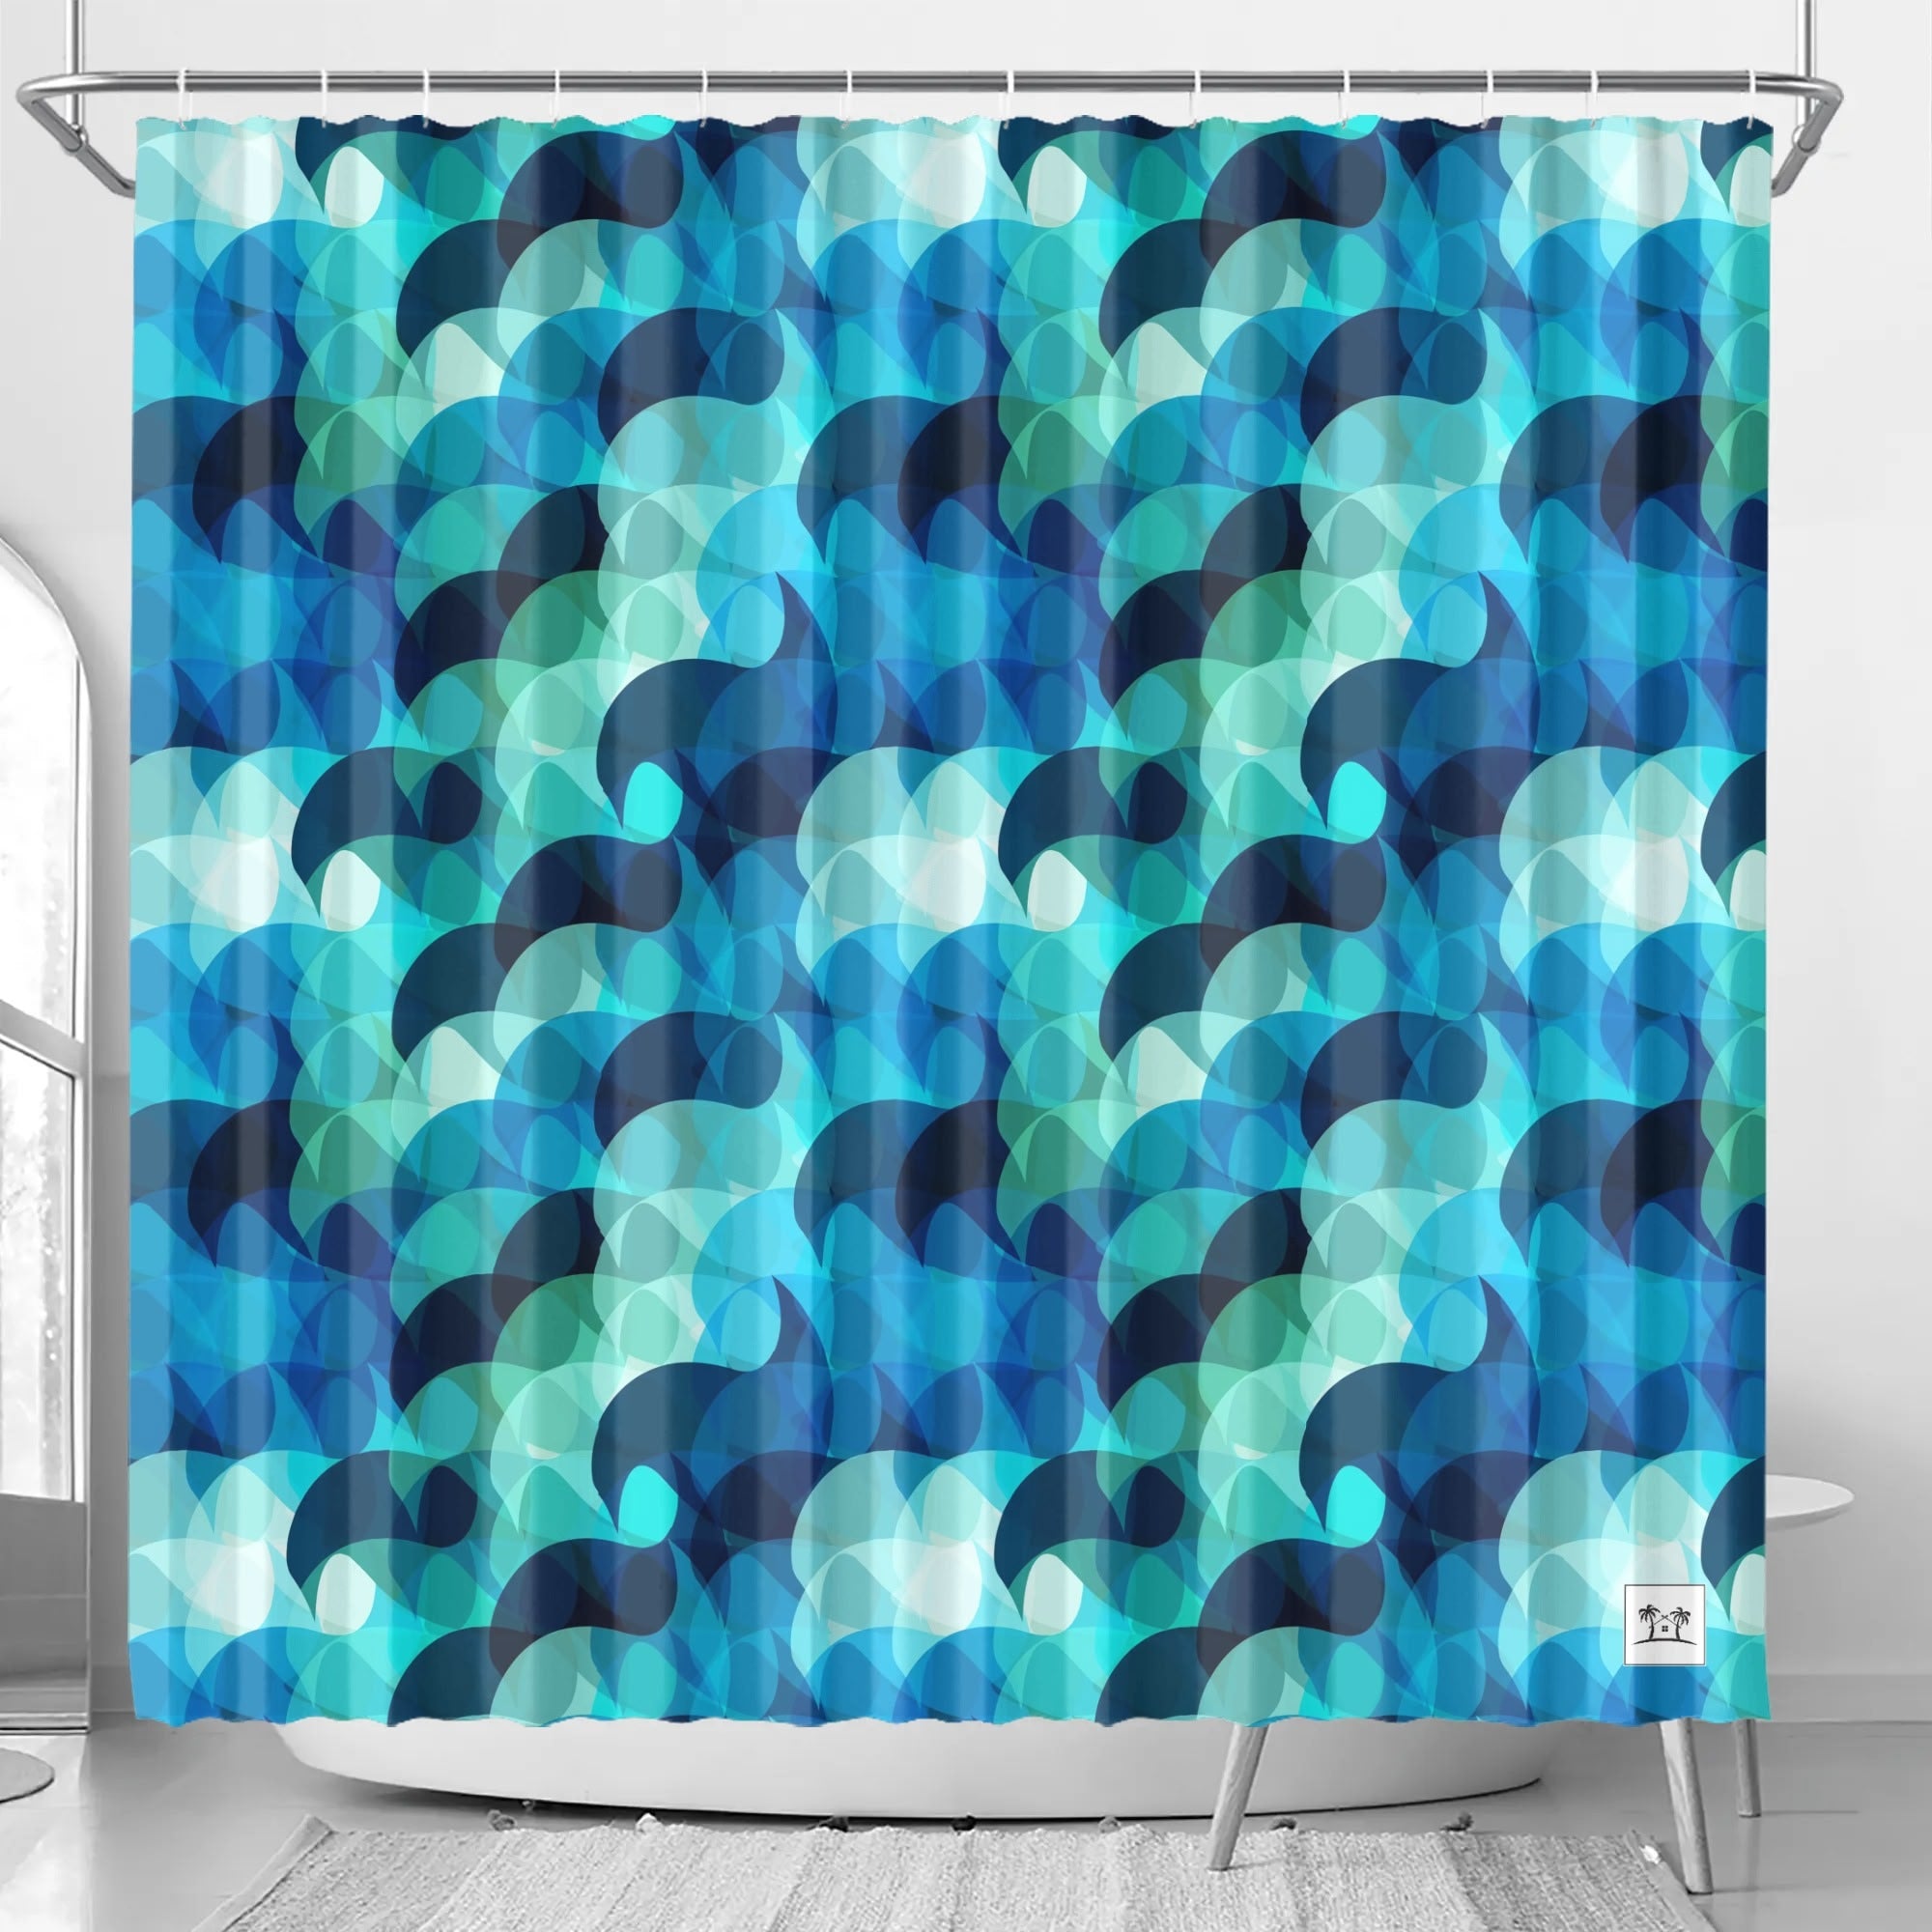 Waterproof Shower Curtain - Mermaid Scales